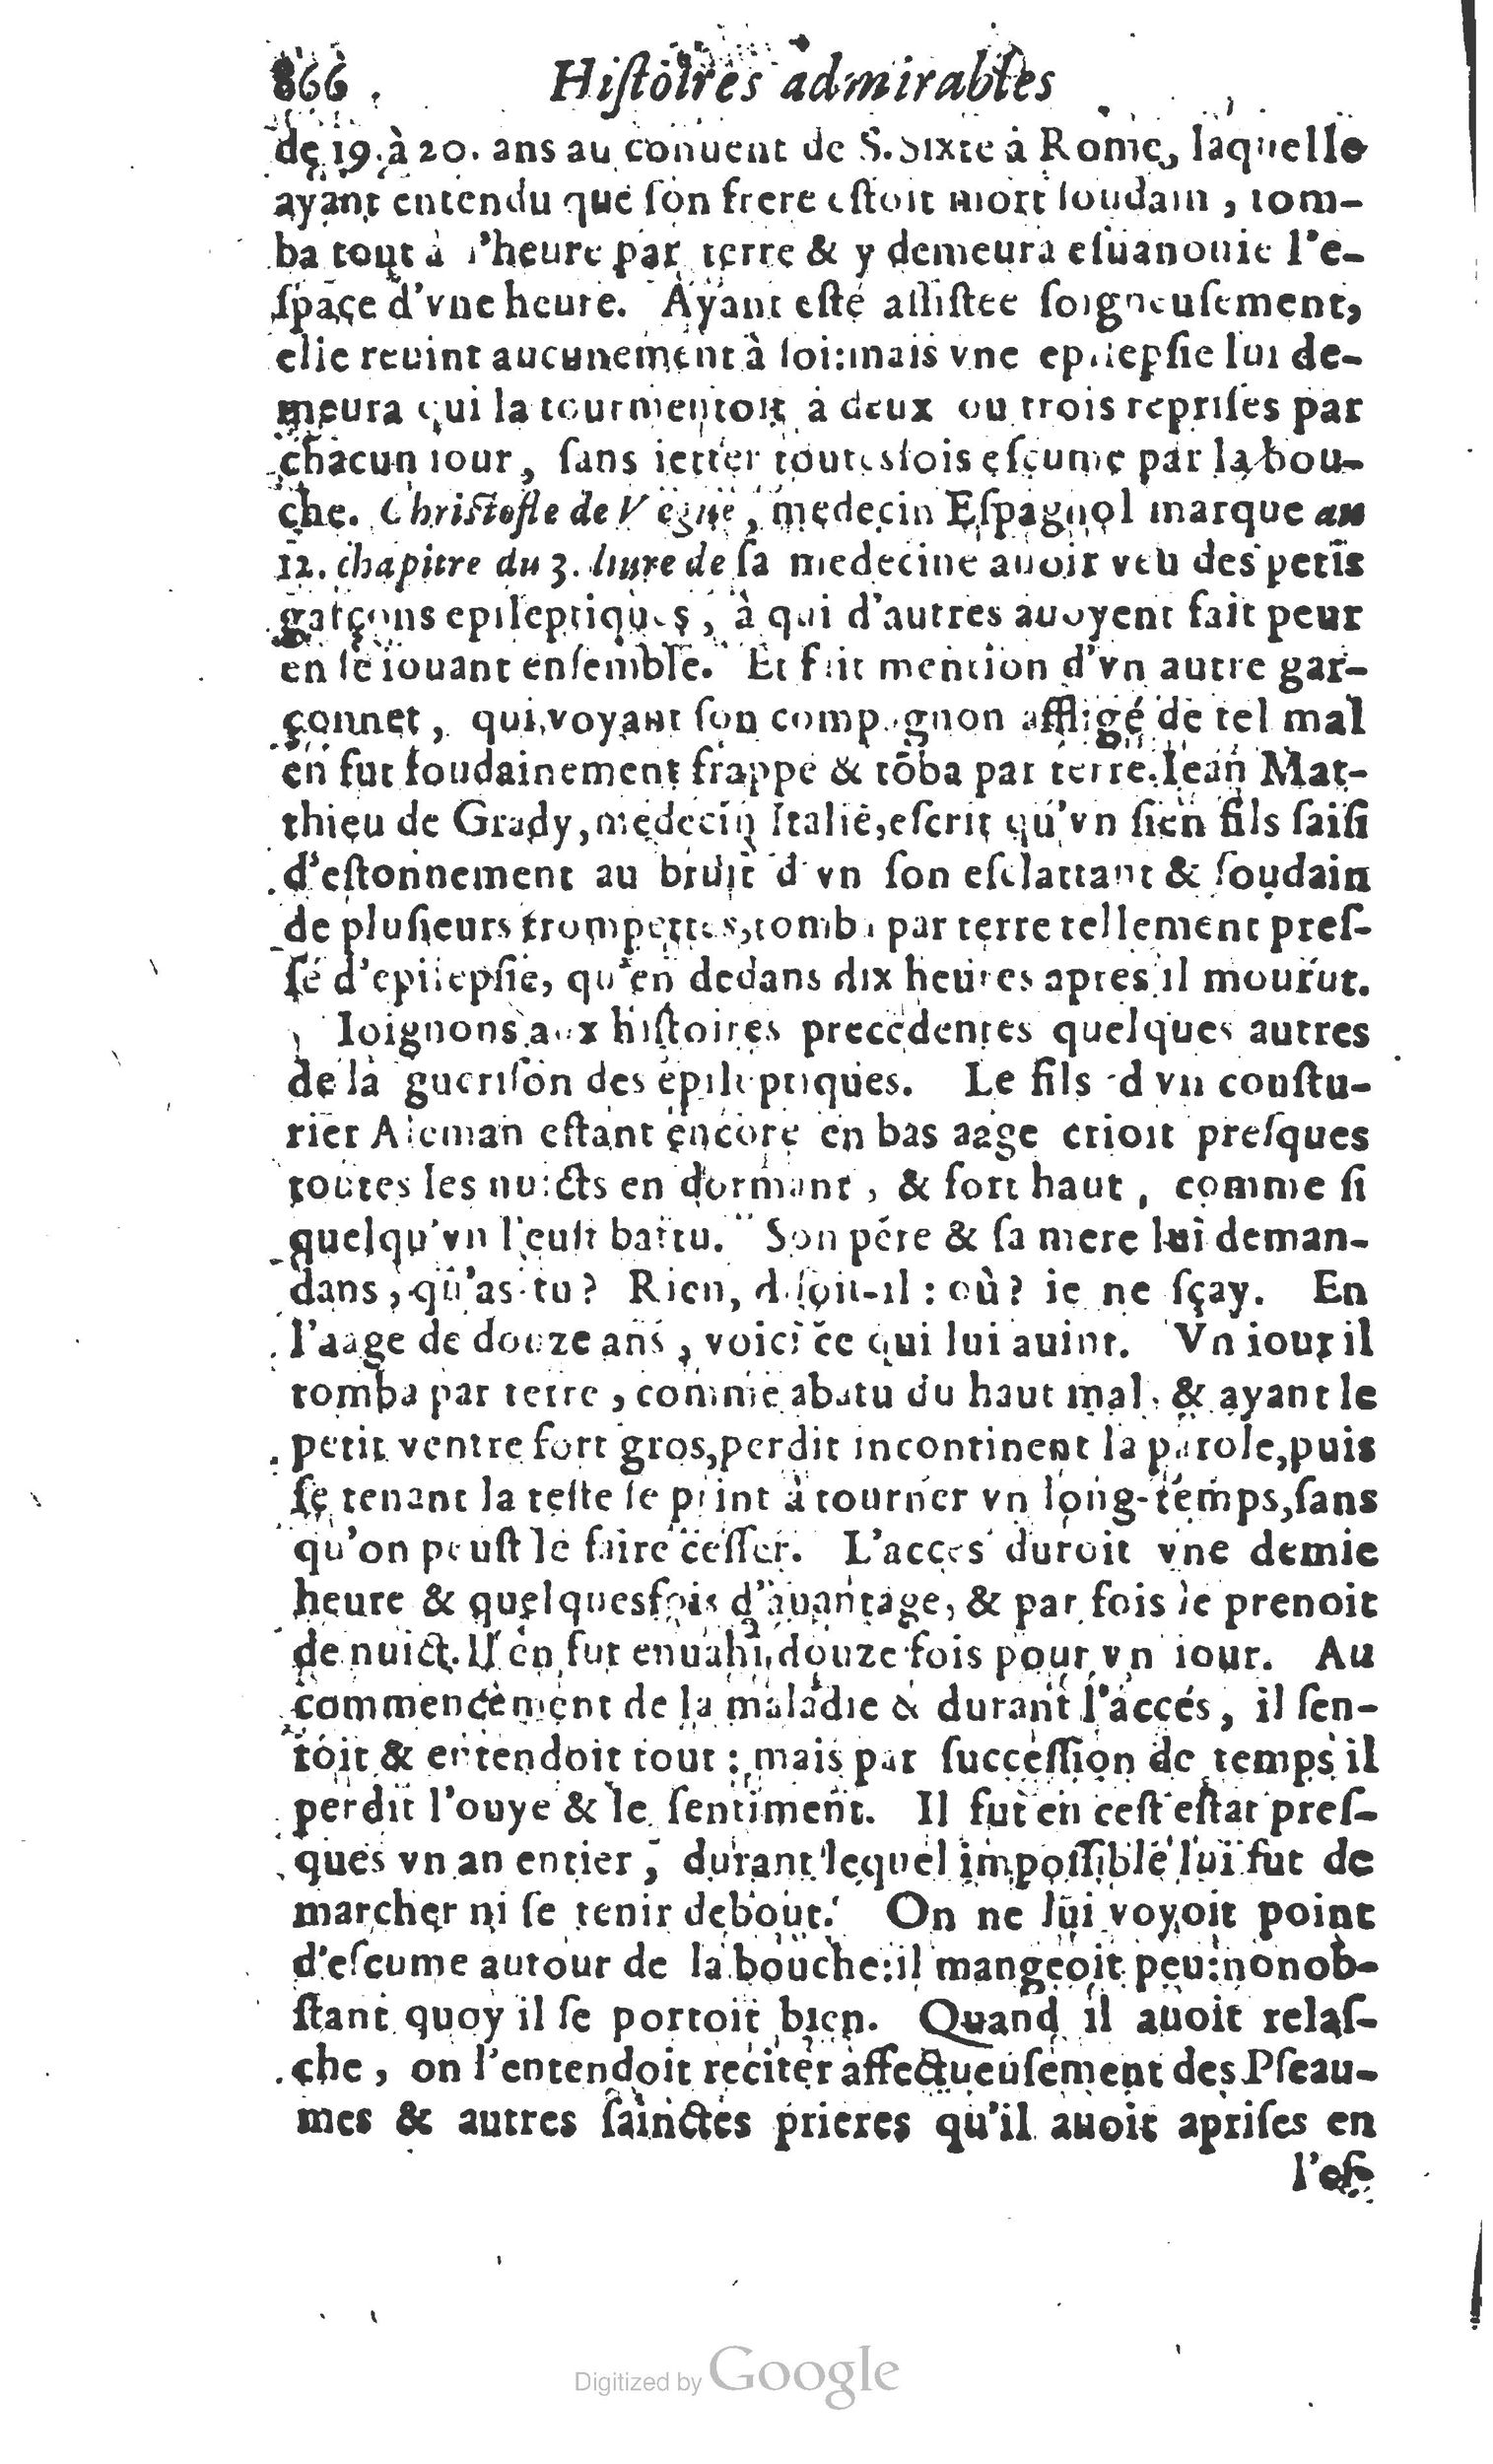 1610 Trésor d’histoires admirables et mémorables de nostre temps Marceau Princeton_Page_0887.jpg